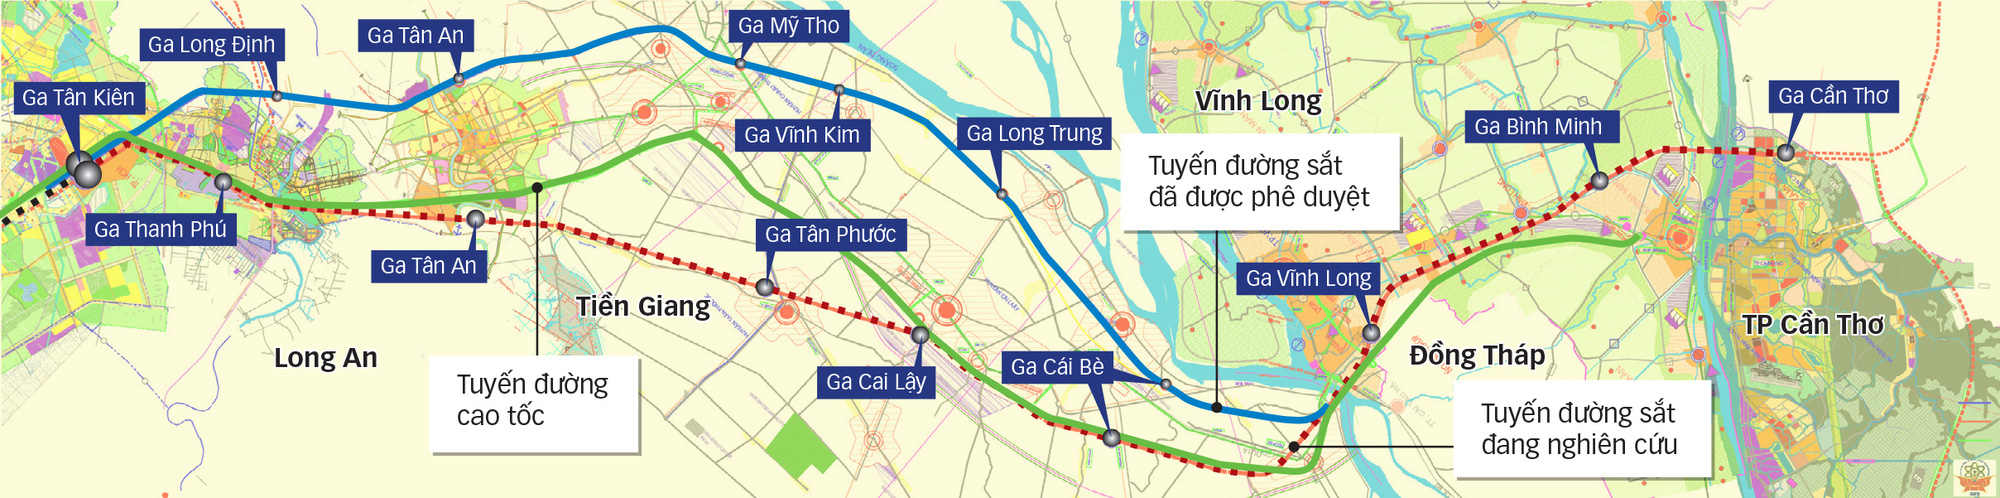 Diện mạo mới tuyến đường sắt TP.HCM - Cần Thơ - Ảnh 1.